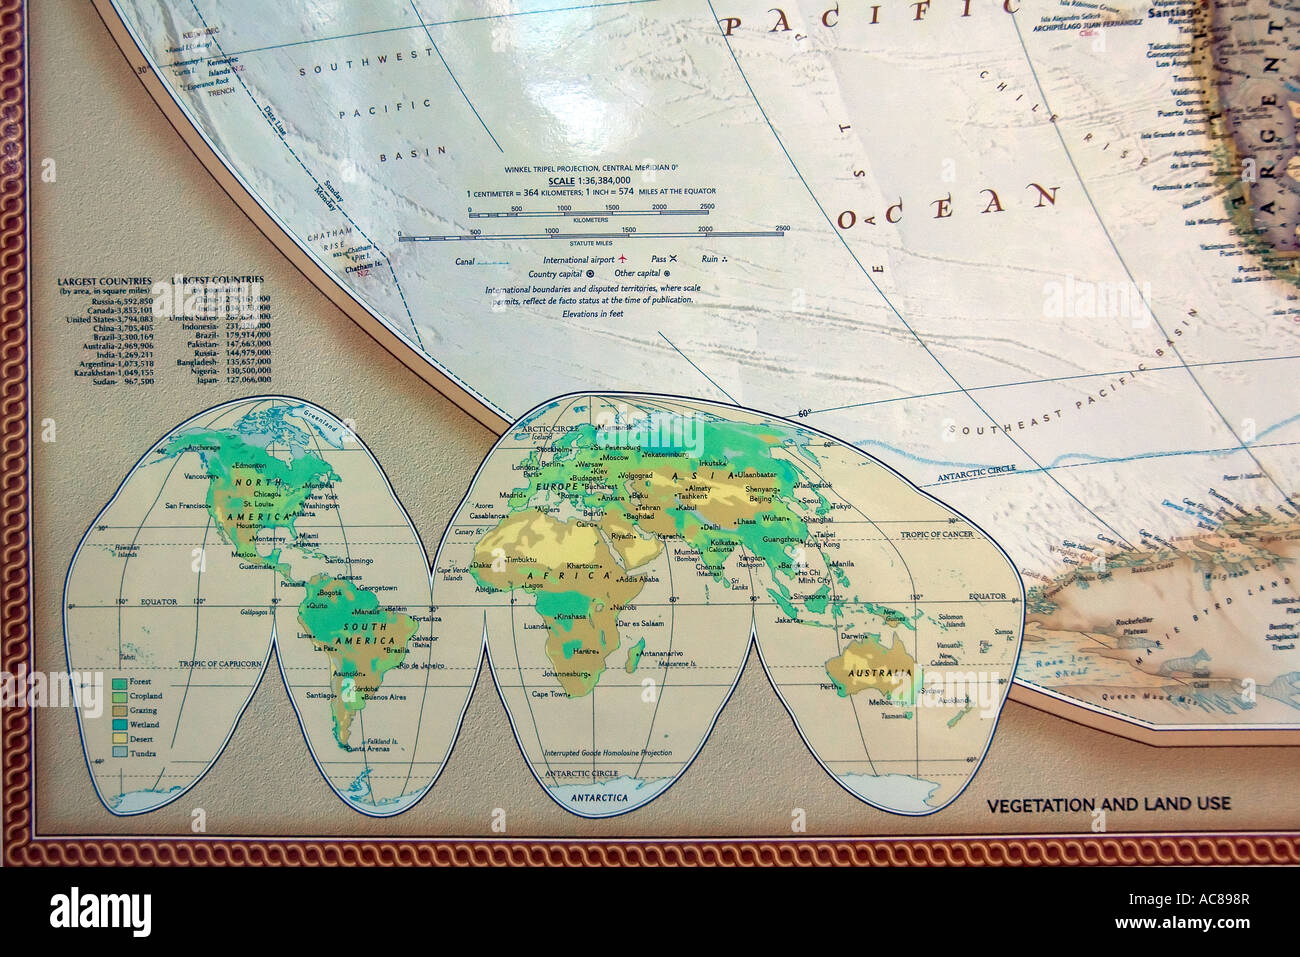 Ein Blick auf eine Ecke von eine feine, detaillierte und farbenfrohe Welt Karte zeigt weltweit Vegetation und Landnutzung. Stockfoto